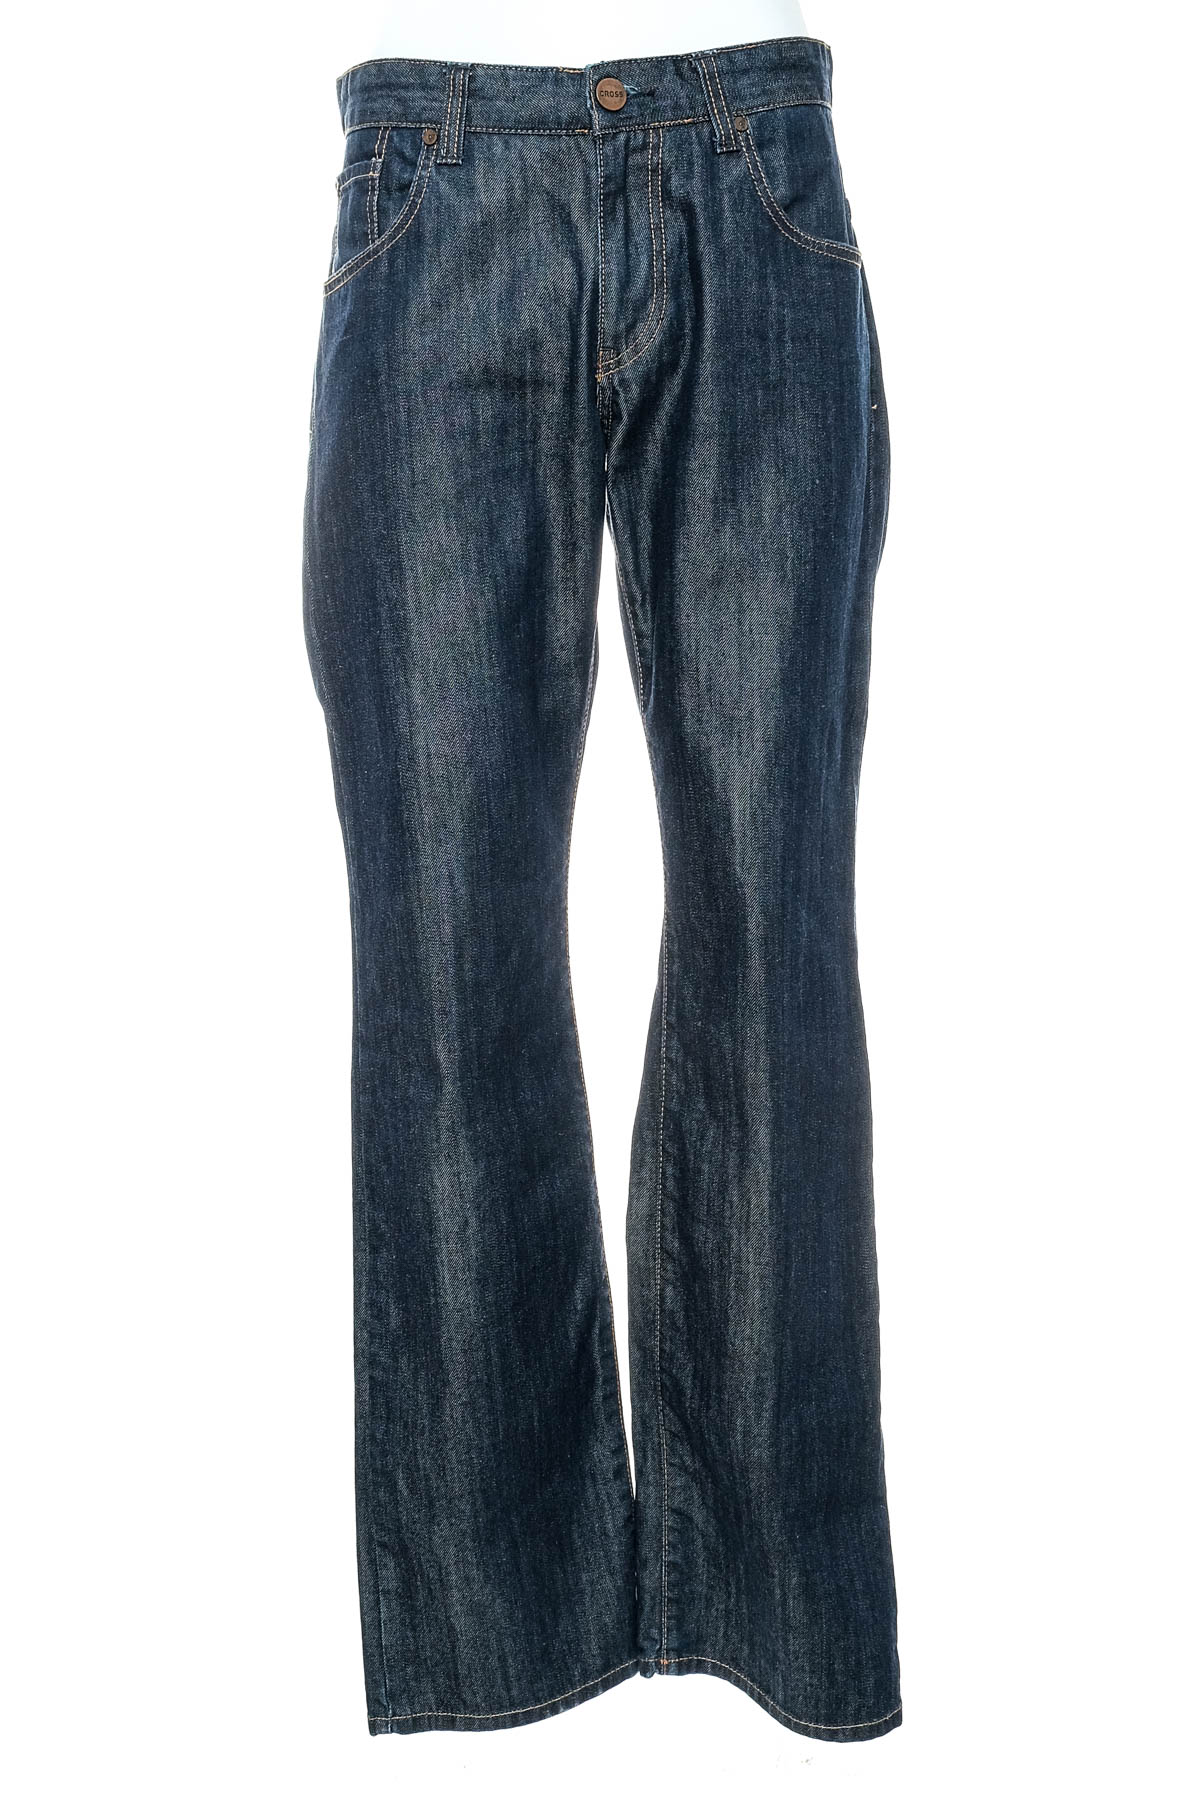 Men's jeans - Cross Jeans - 0